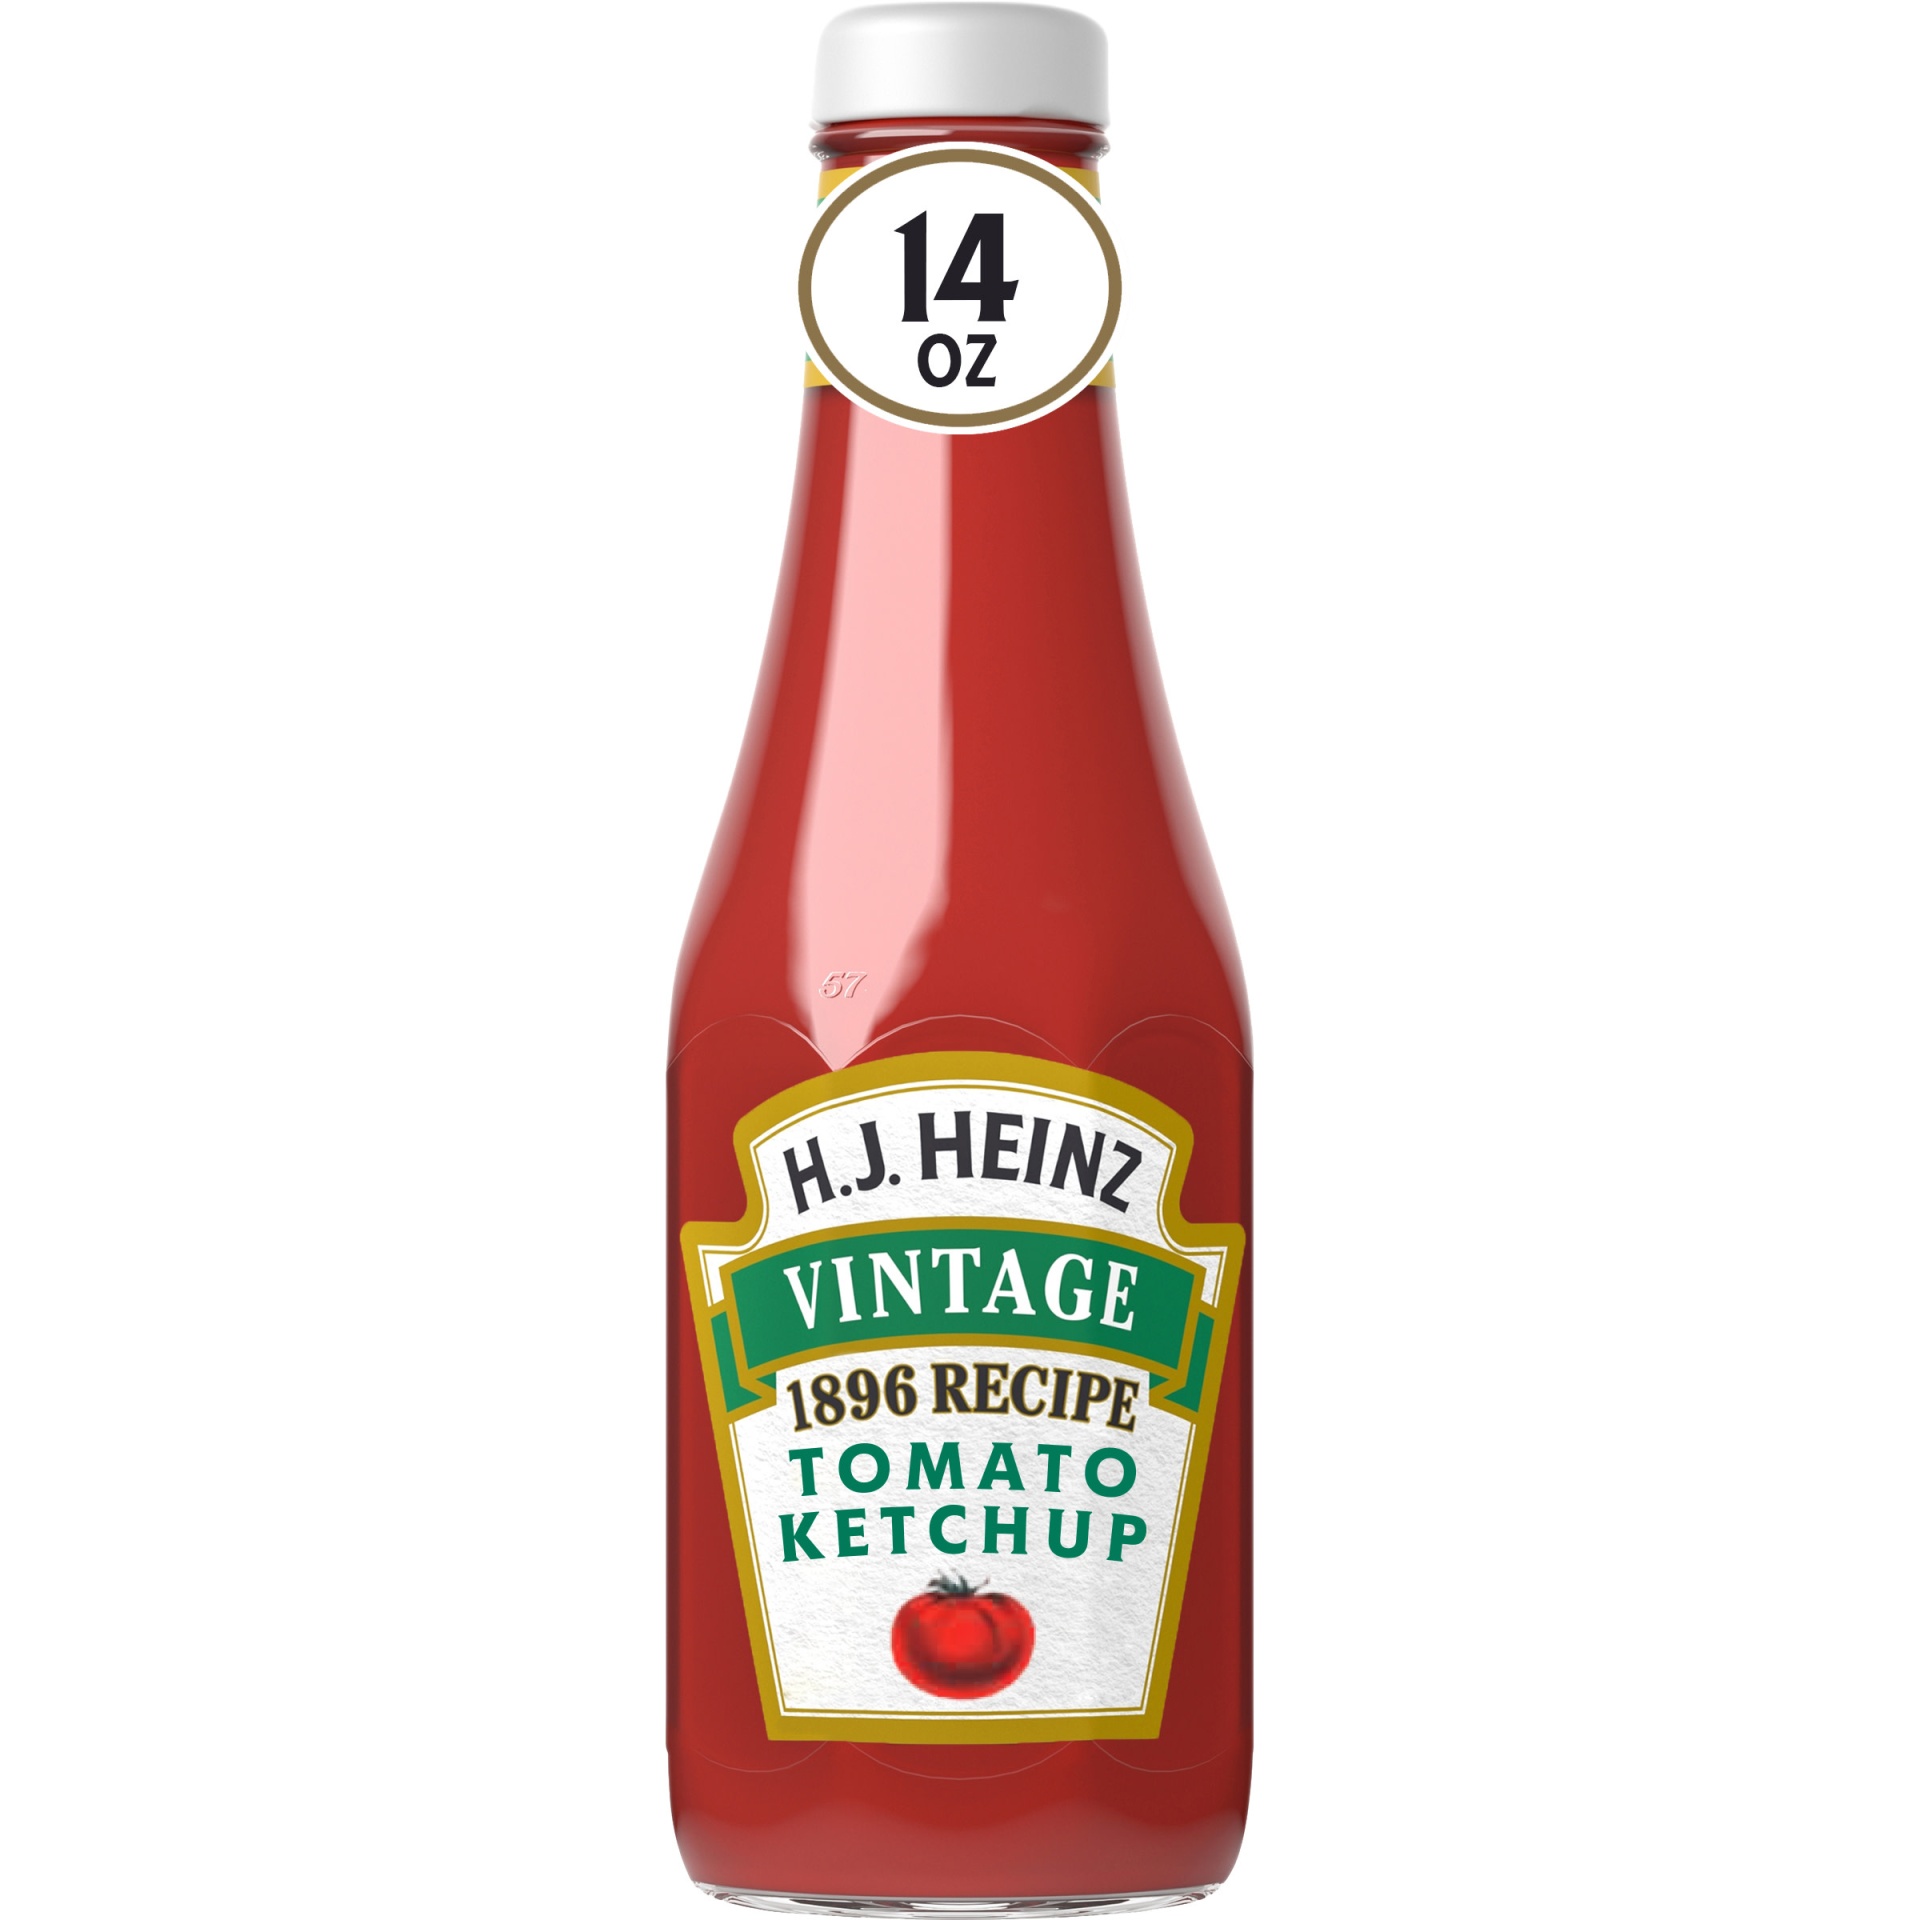 slide 1 of 1, Heinz H.J. Vintage 1896 Recipe Tomato Ketchup Bottle, 14 oz